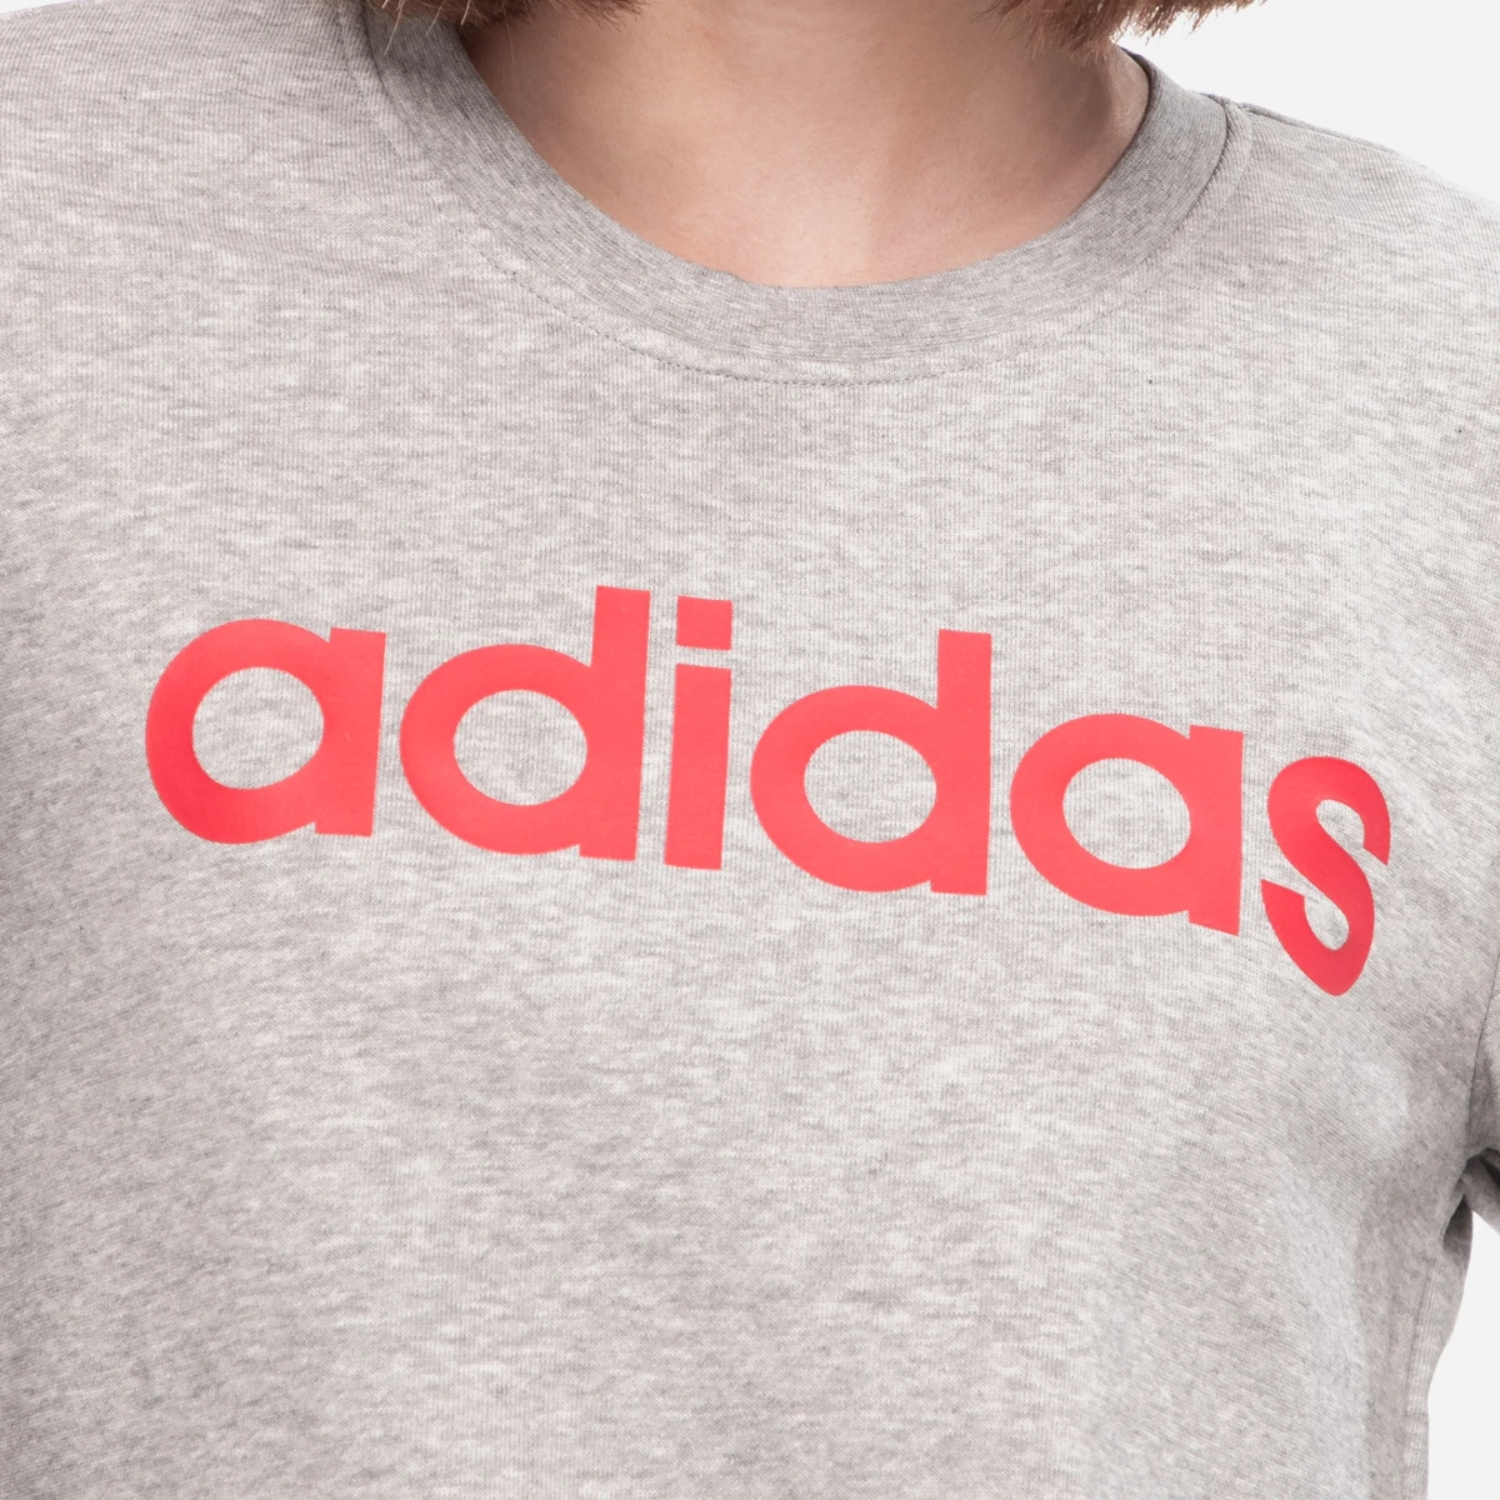 adidas-womens-essentials-linear-sweatshirt-fm6435